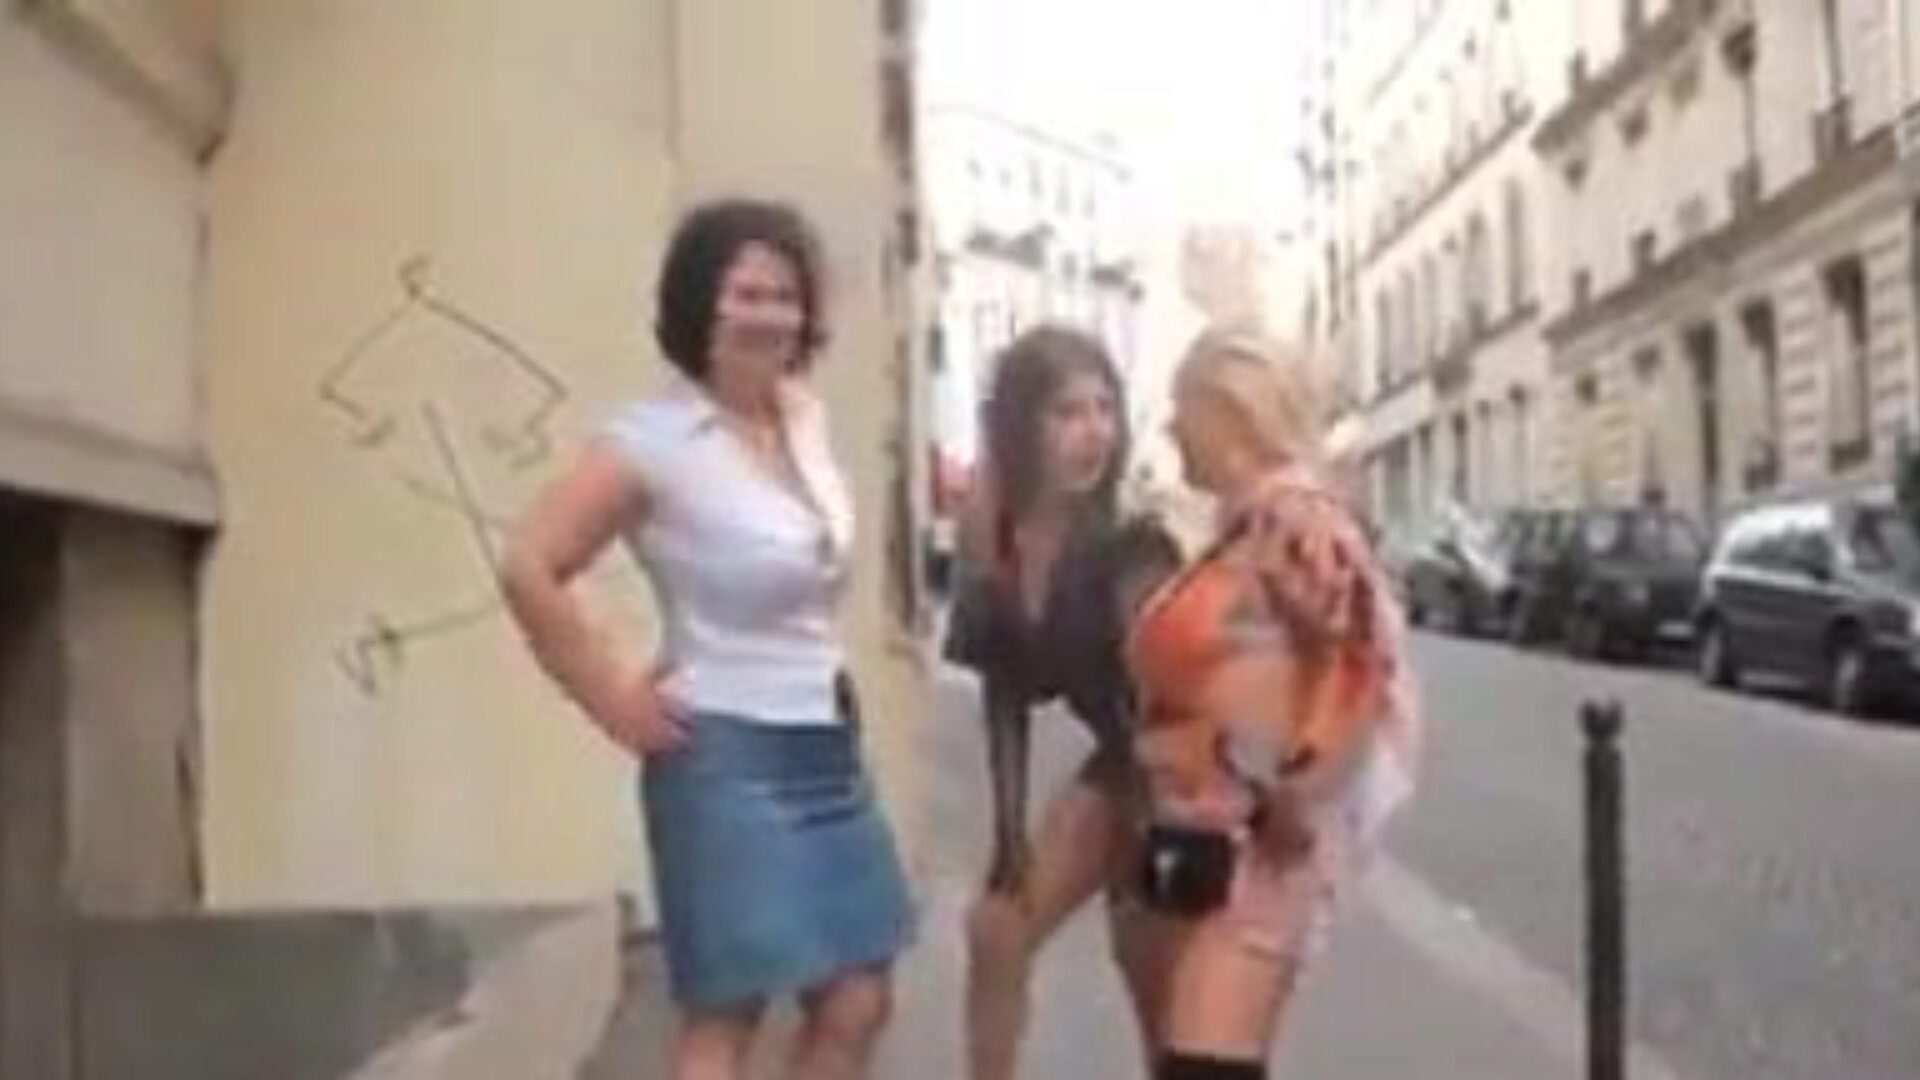 trio reife: free reife dvd porno video f5 - xhamster schau dir den reifen tube lovemaking film auf xhamster kostenlos an, mit der sexiesten schar französischer reifer dvd-, anal- und mobiler reifer porno-video-sequenzen